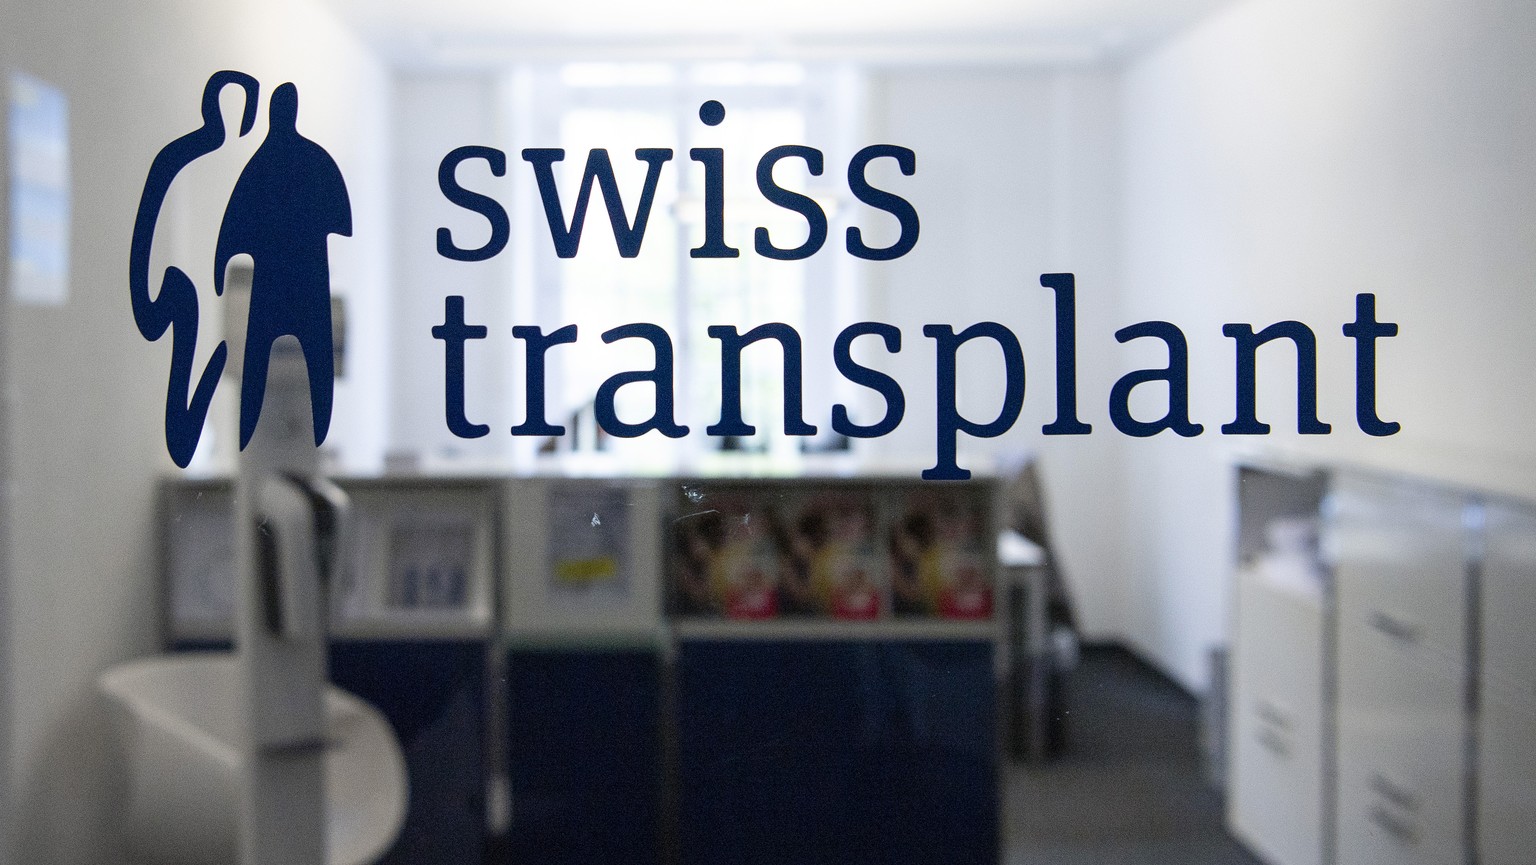 Les systèmes informatiques de Swisstransplant étaient si mal conçus que n’importe qui était apte à décider de ce qui pouvait figurer sur la carte de donneur d'organes d'une tierce personne.